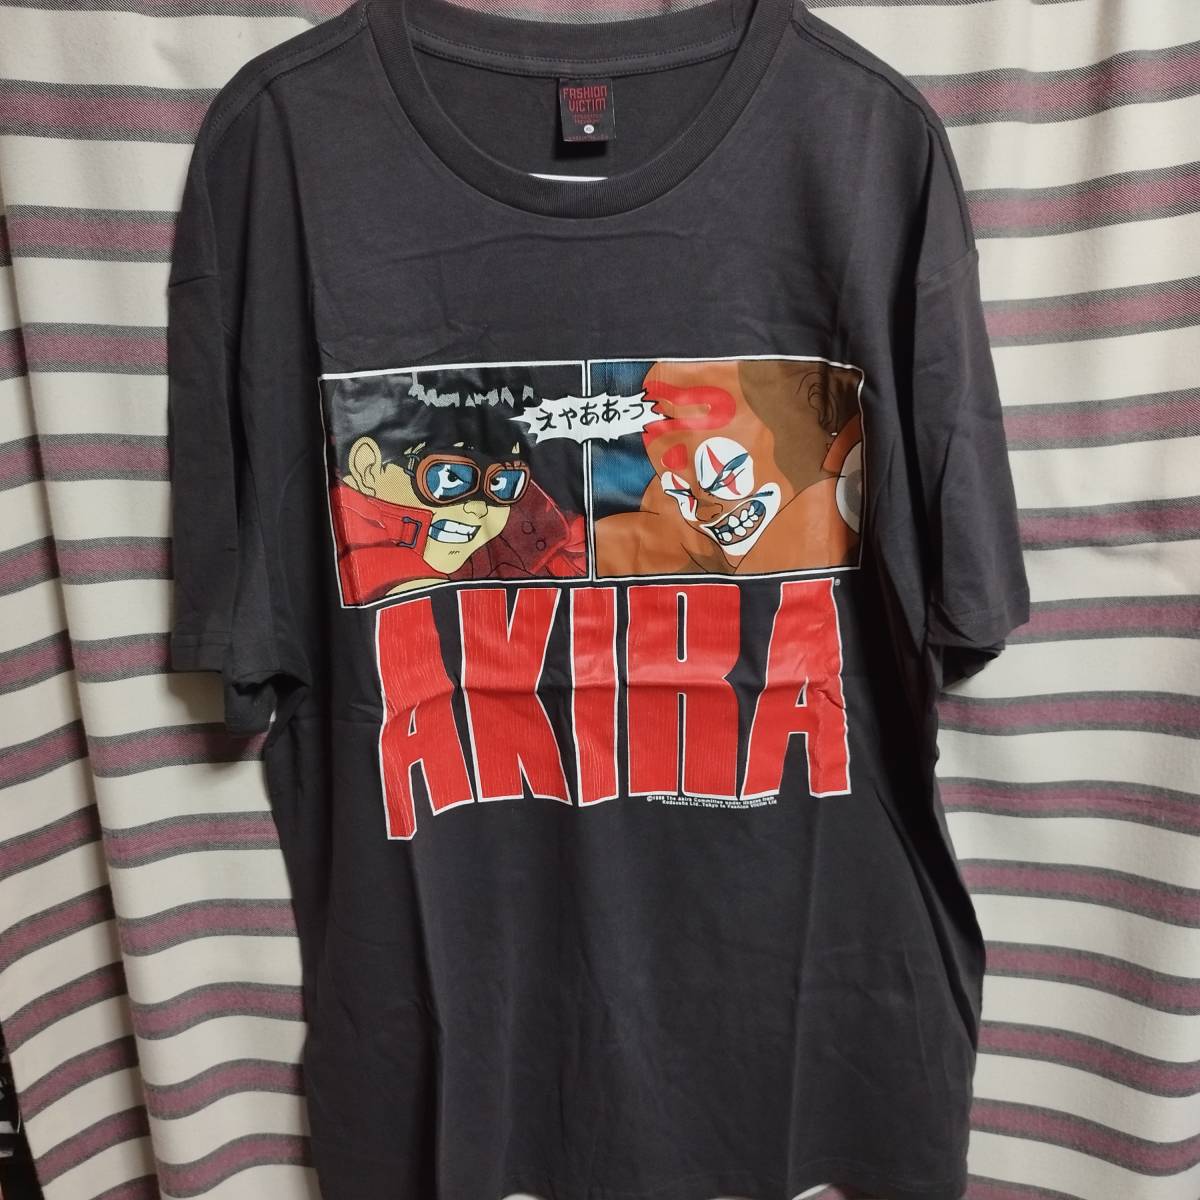 Yahoo!オークション -「akira 大友克洋 tシャツ」(Tシャツ) (メンズ 